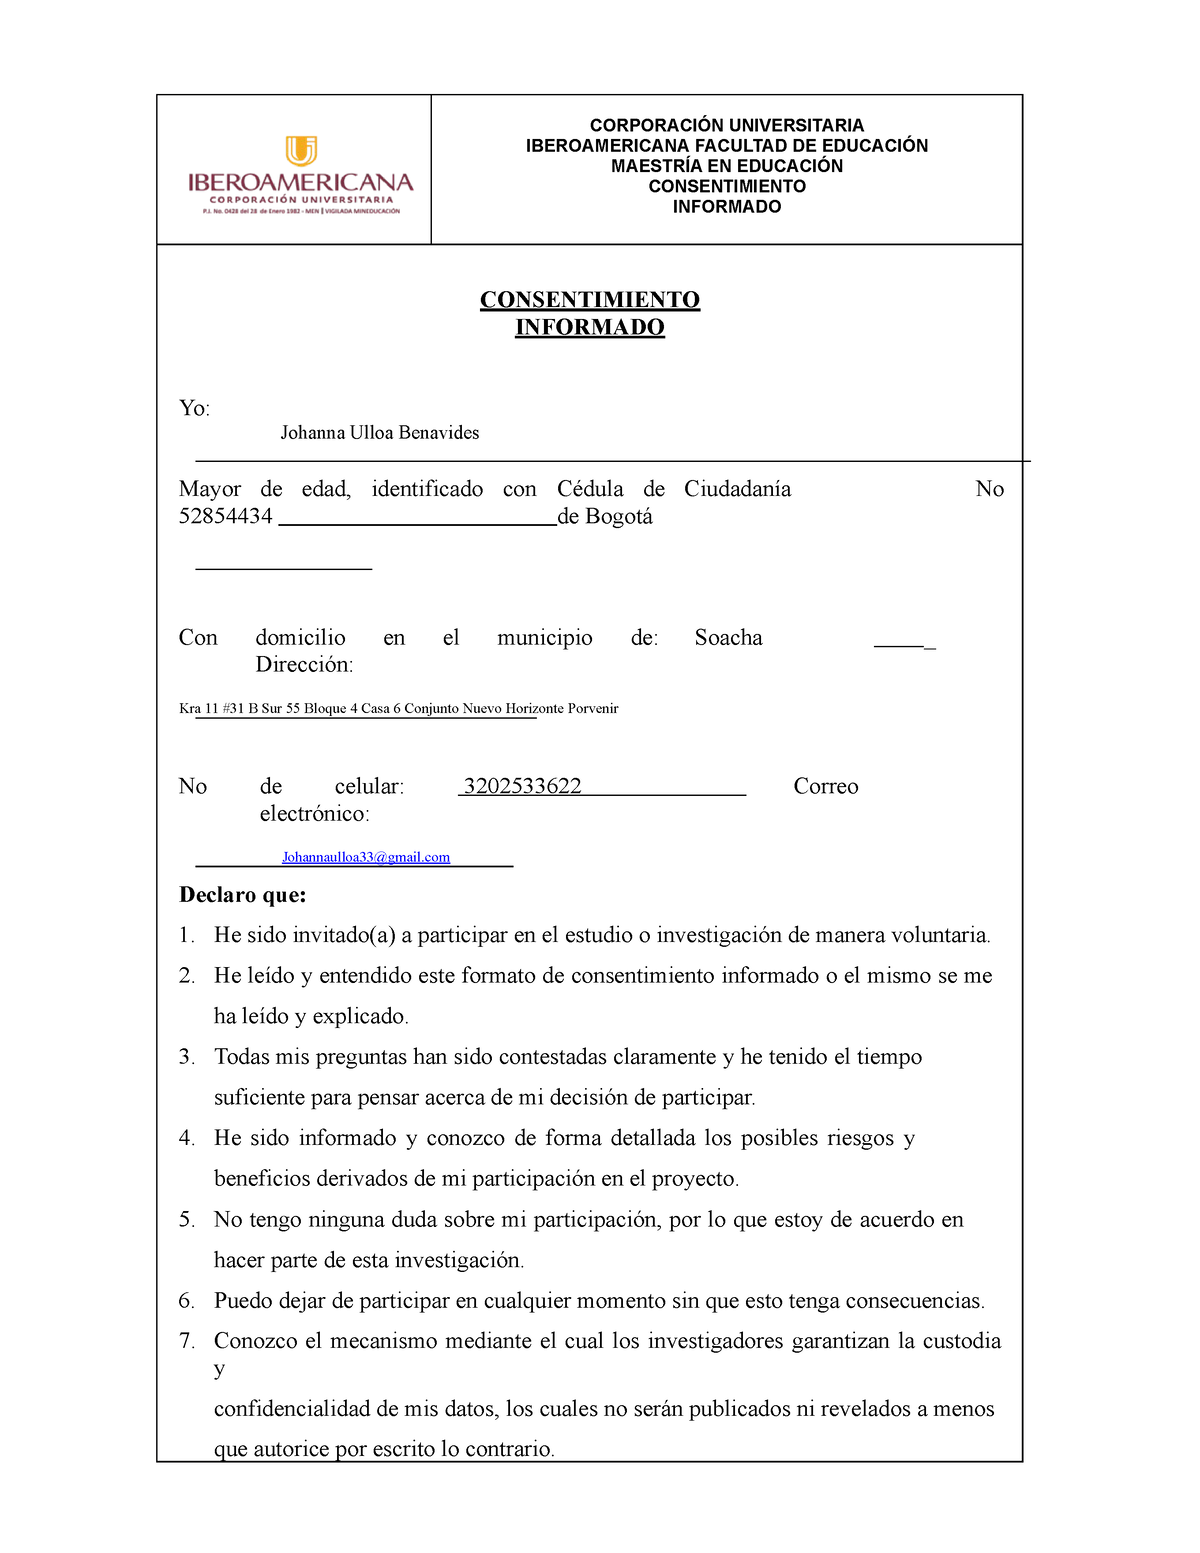 Formato Consentimiento Informado CorporaciÓn Universitaria Iberoamericana Facultad De 6619